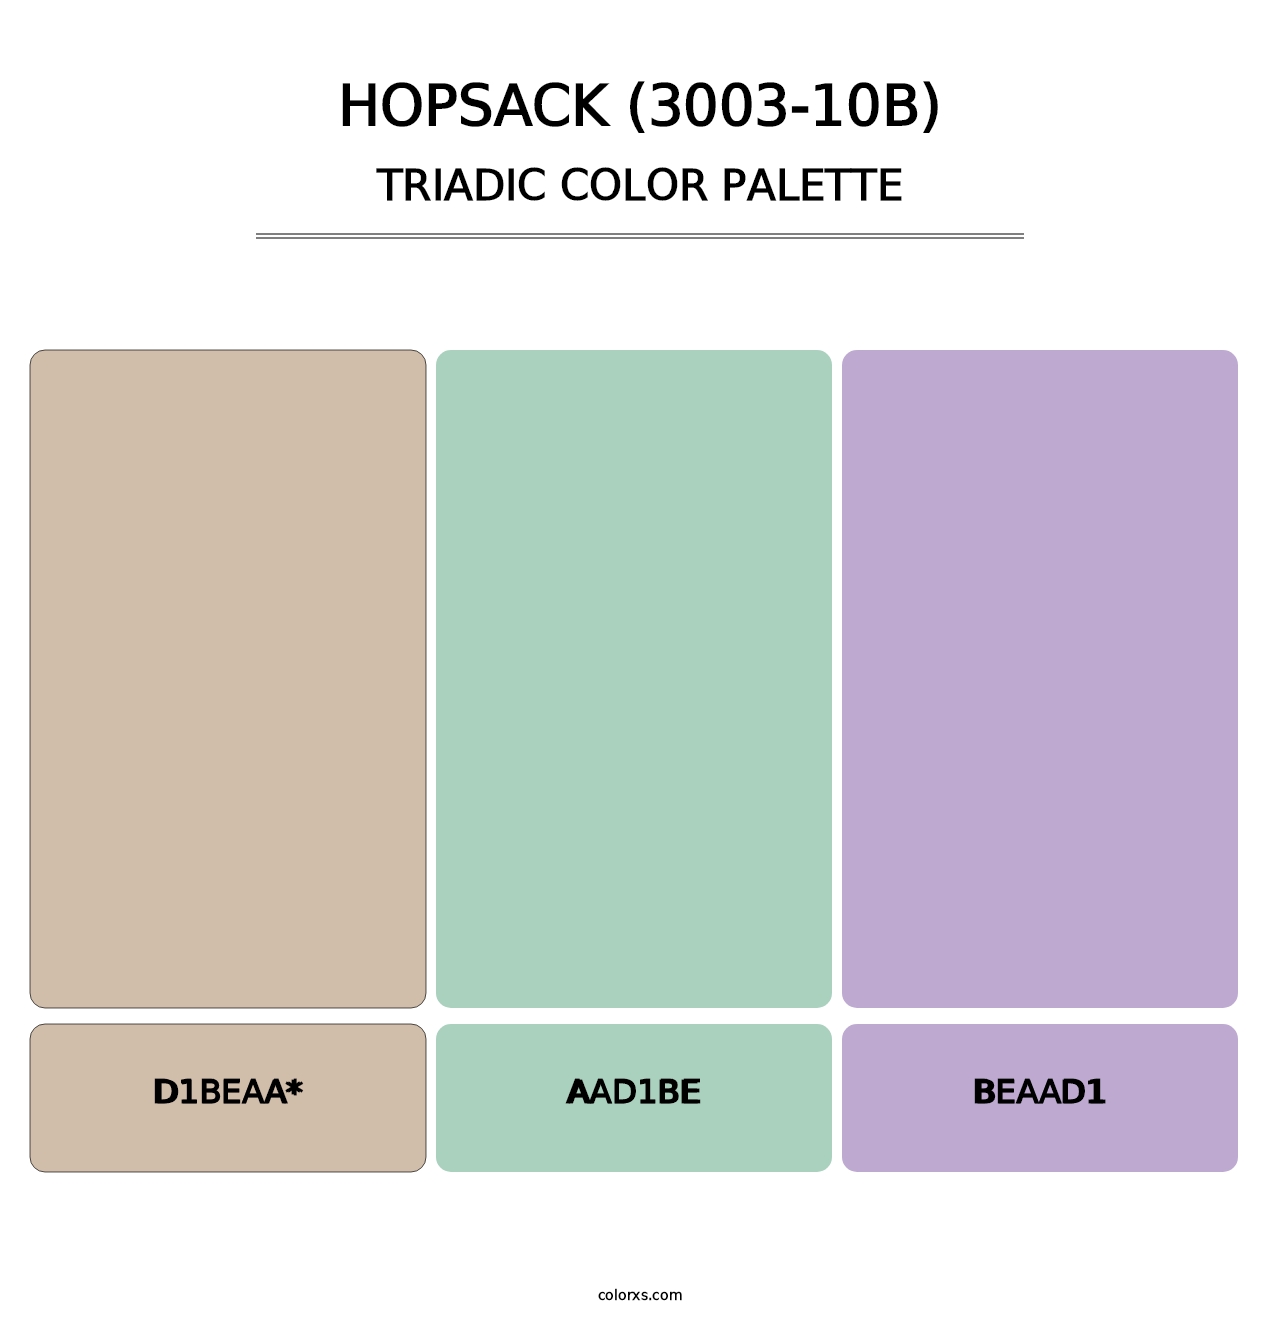 Hopsack (3003-10B) - Triadic Color Palette